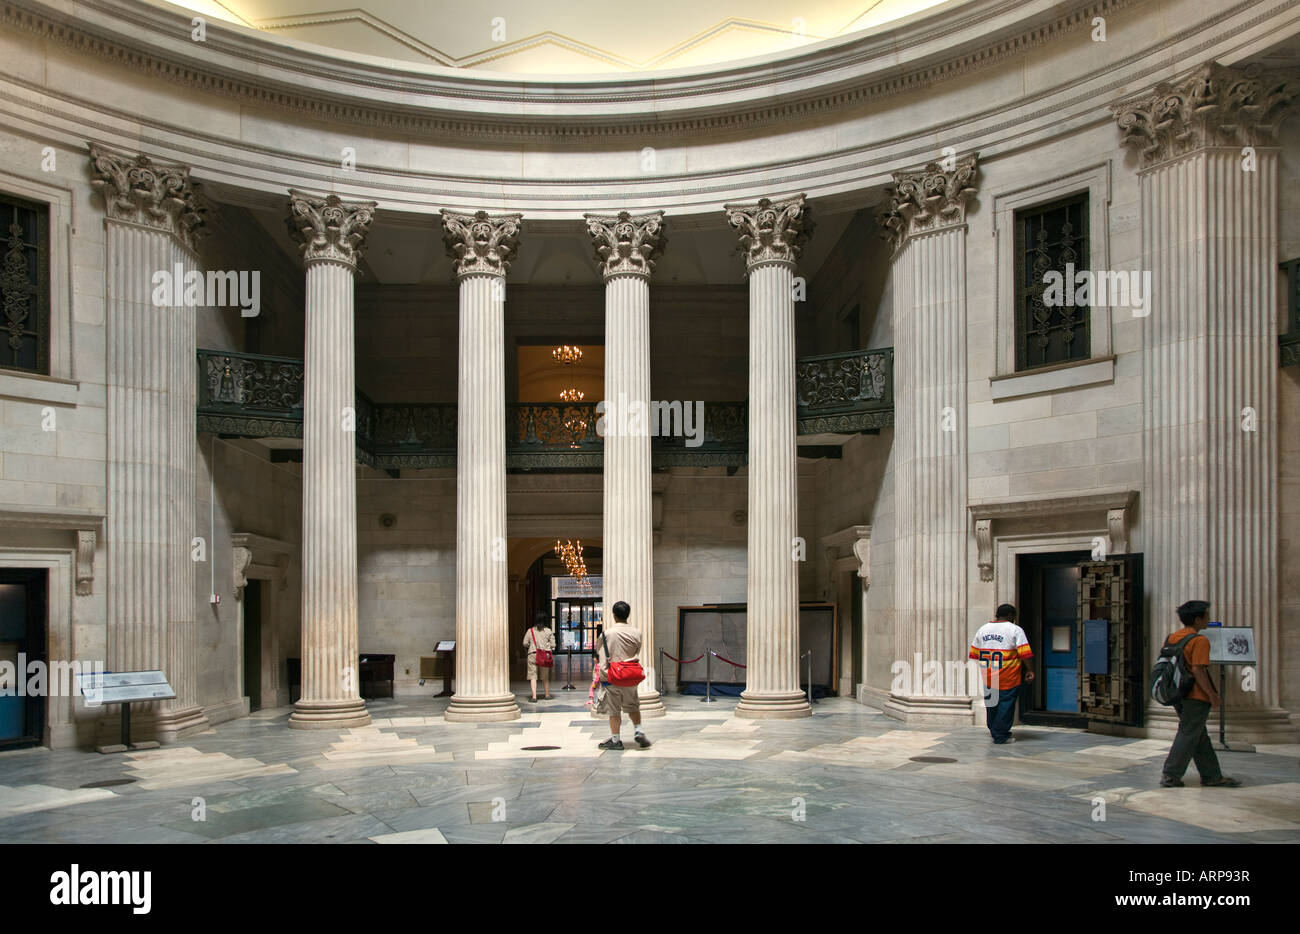 Main ROTUNDA inside FEDERAL HALL NEW YORK CITY Stock Photo